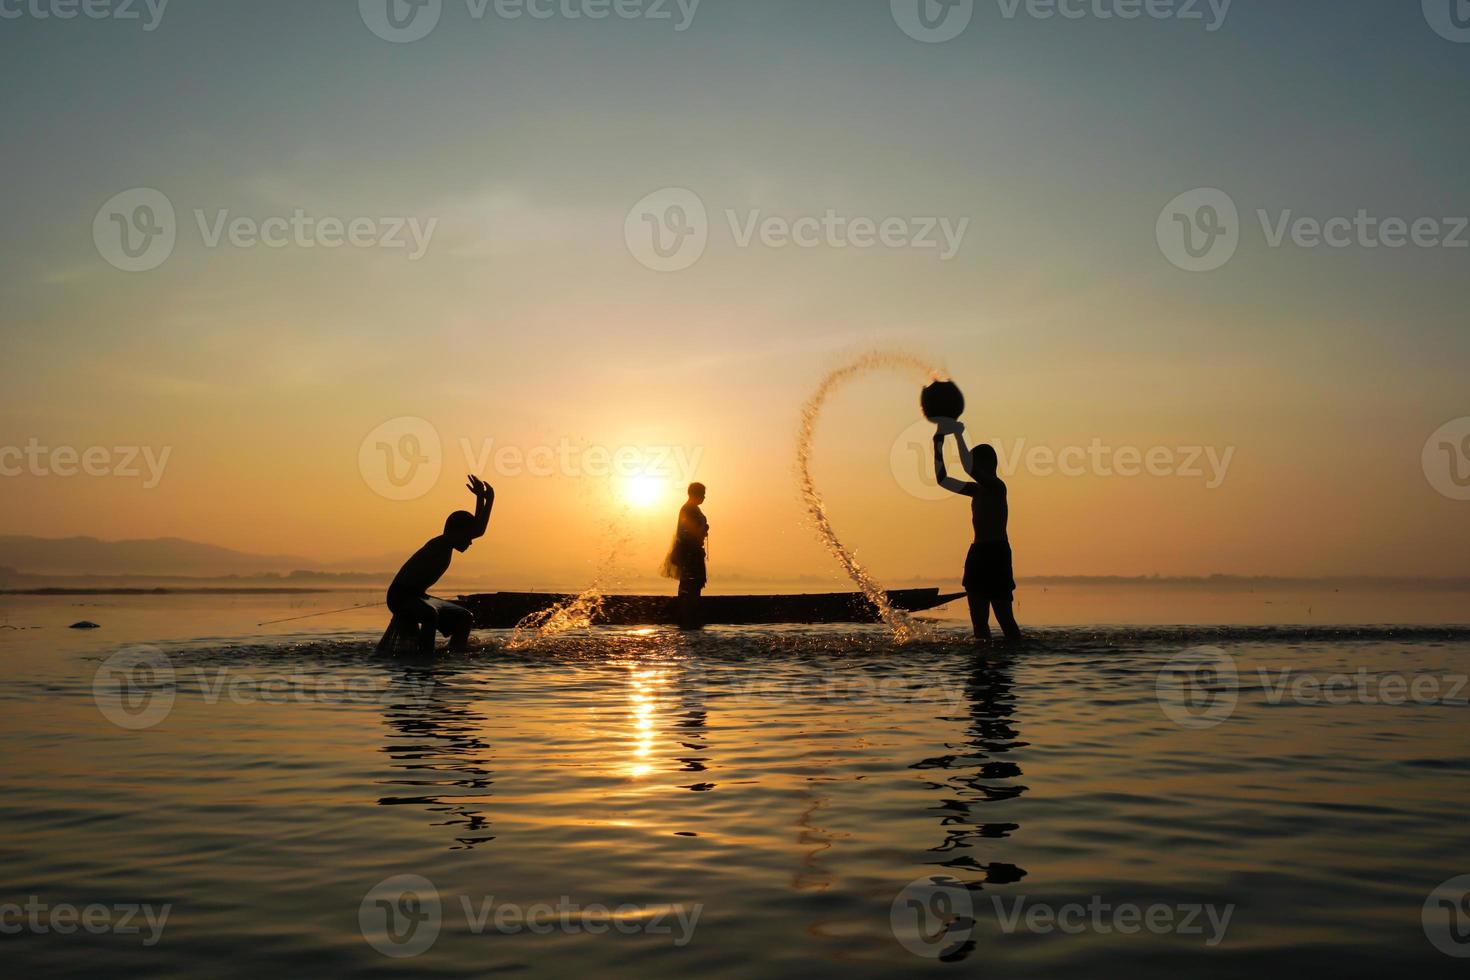 pescatore asiatico in piedi sulla barca e usando la canna da pesca per catturare il pesce mentre suo figlio si spruzza acqua l'un l'altro sul lato del lago al mattino foto